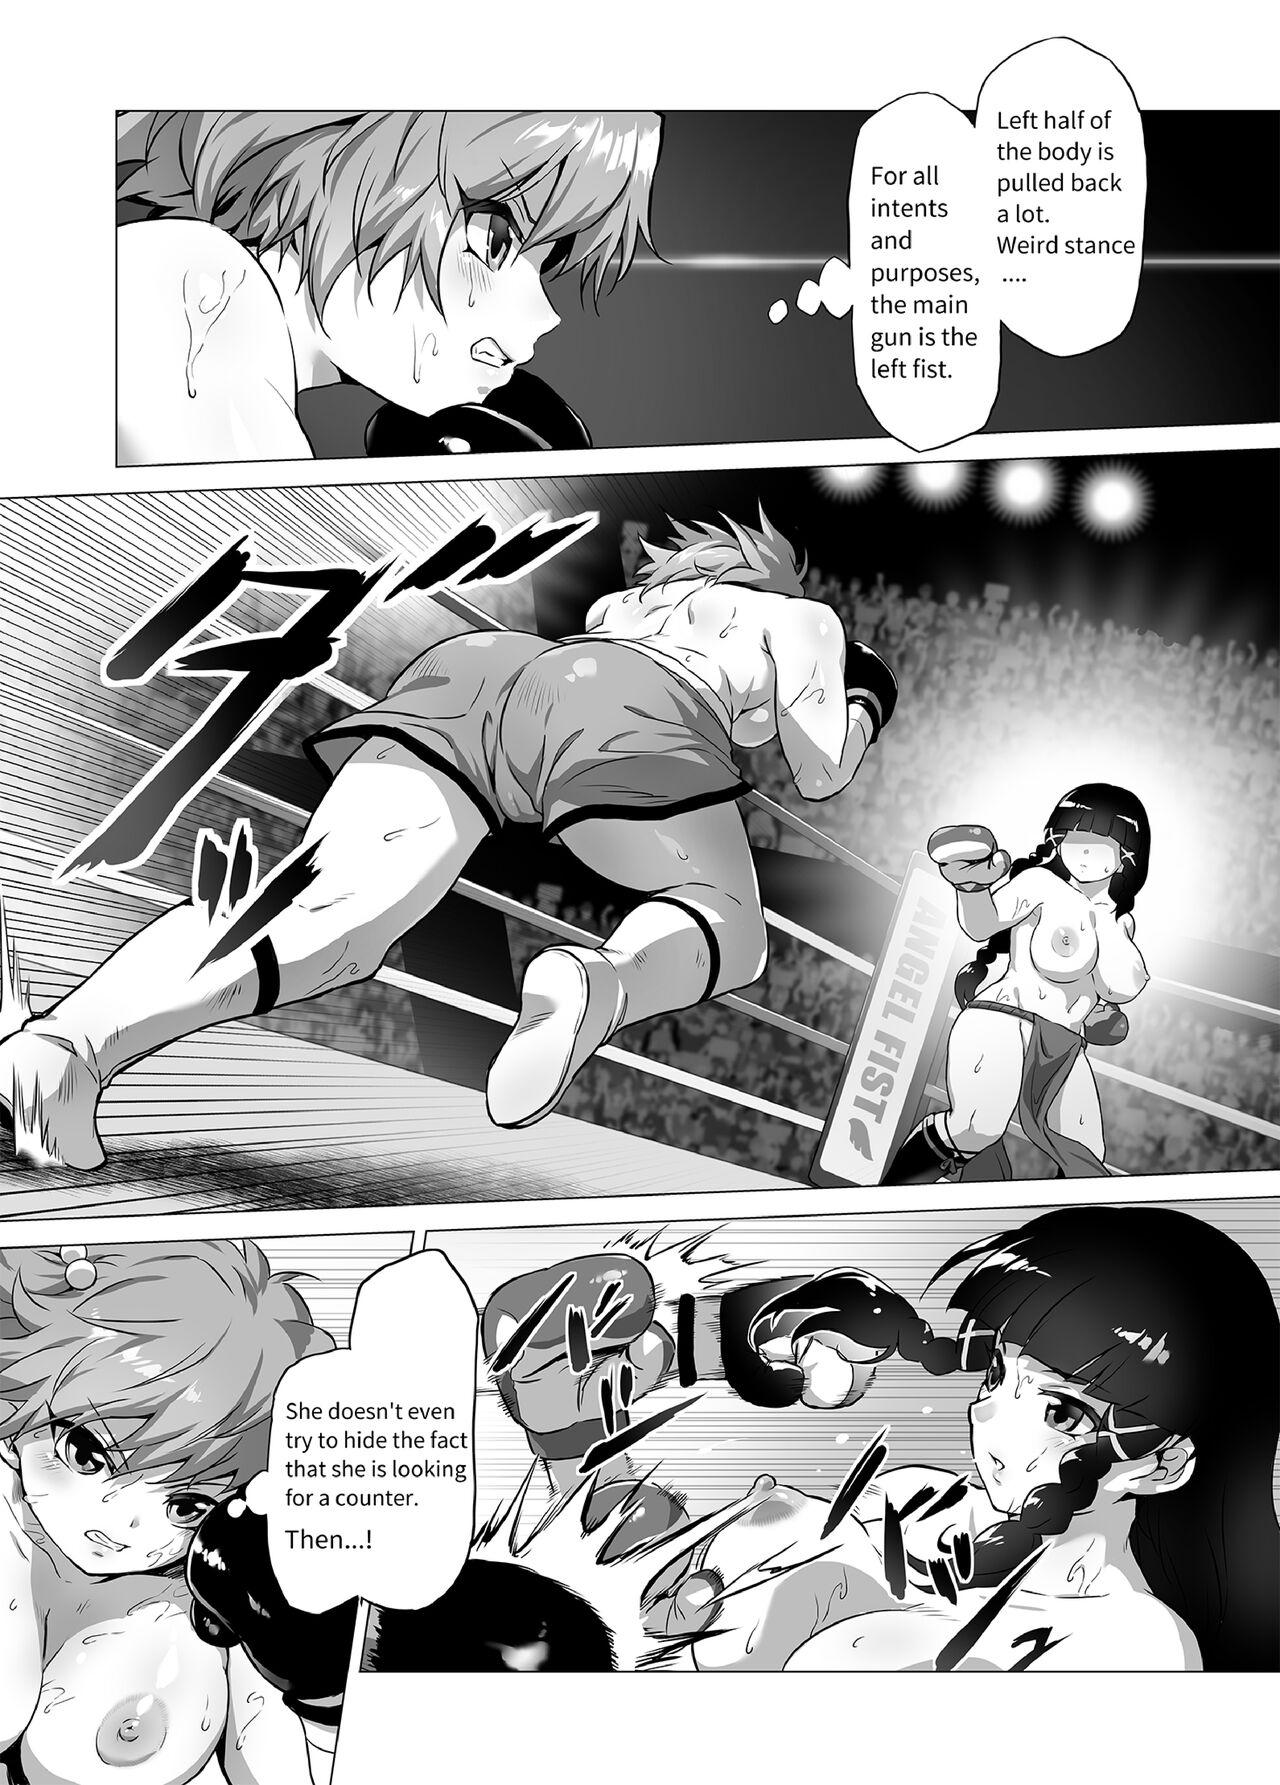 Mahiro STANDUP! Manga Ver. 6